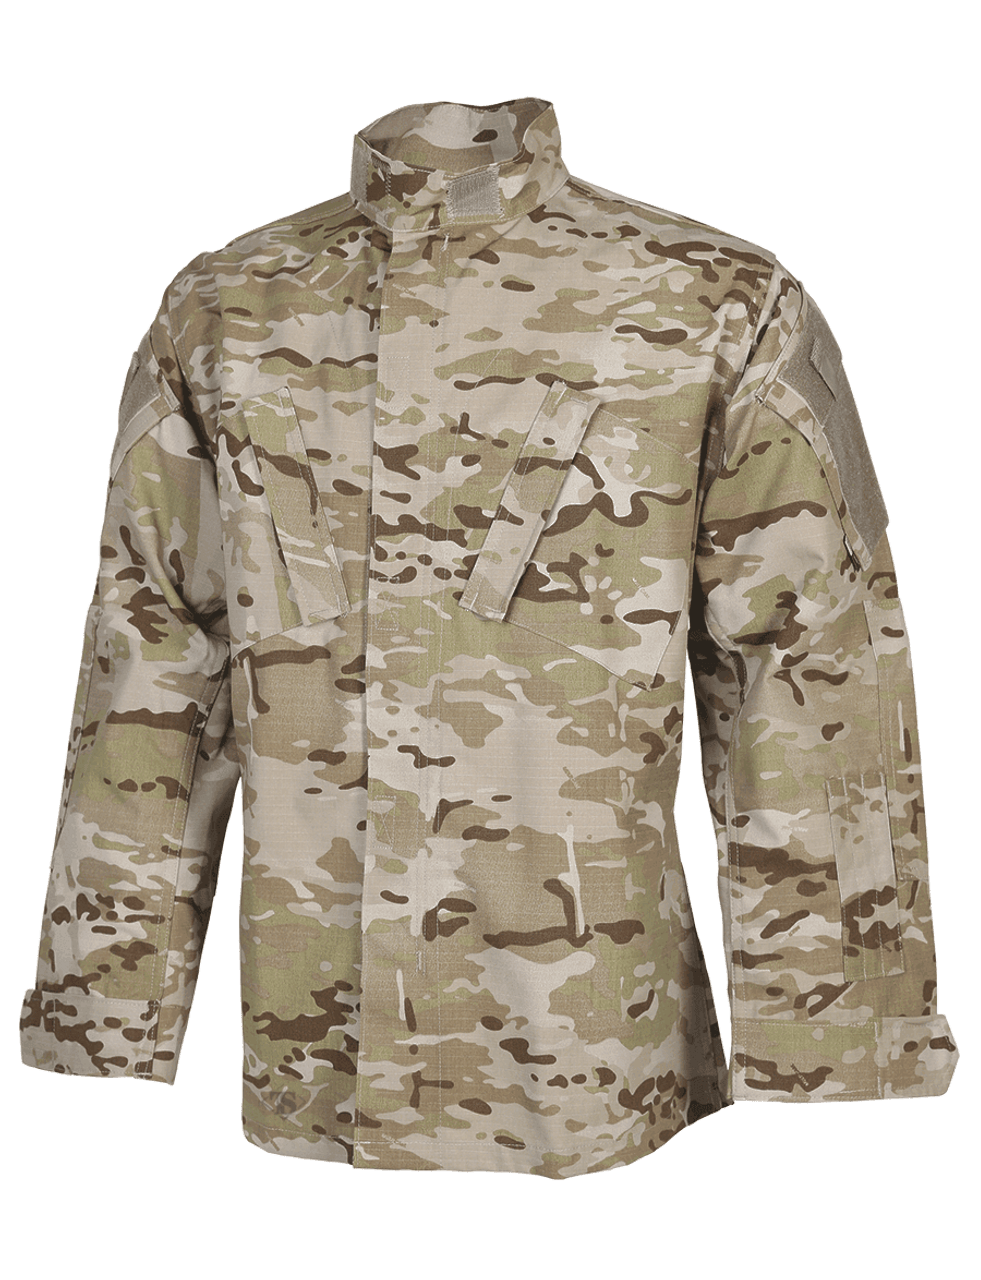 Tru-Spec 1325 Multicam Arid 50/50 Nylon/Cotton Rip-Stop Tactical Response  Uniform Shirt - Atlantic Tactical Inc